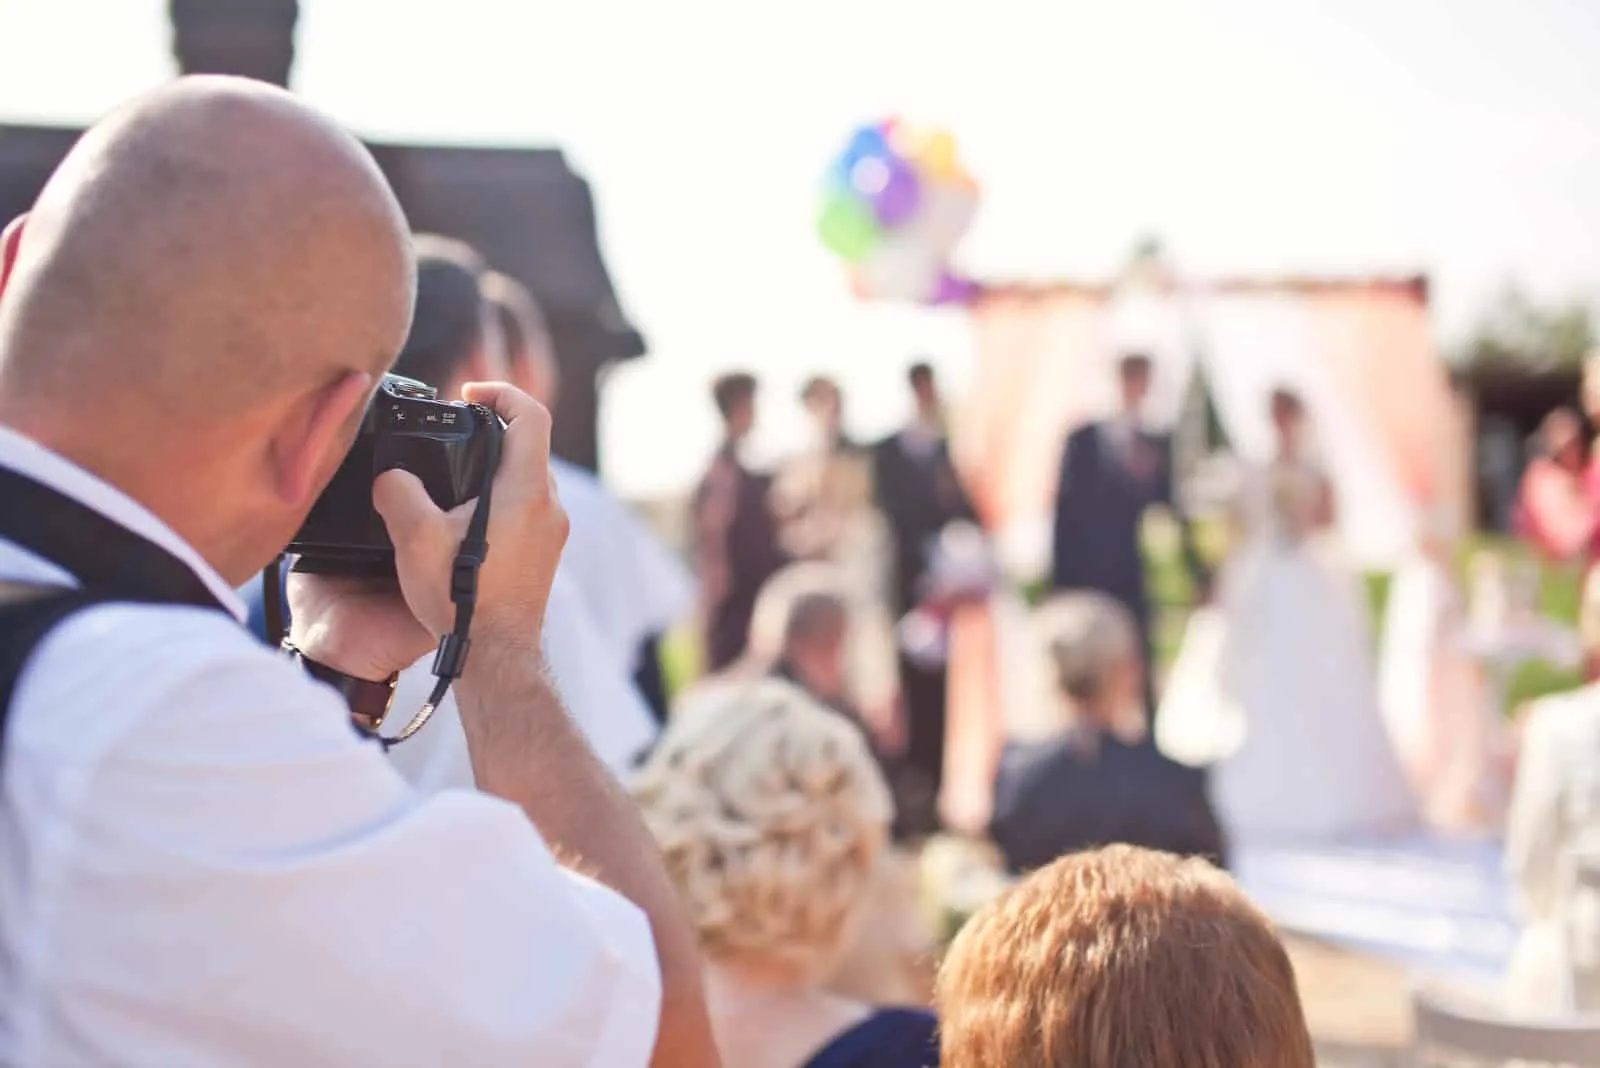 Fotograf, der eine Hochzeitszeremonie fotografiert